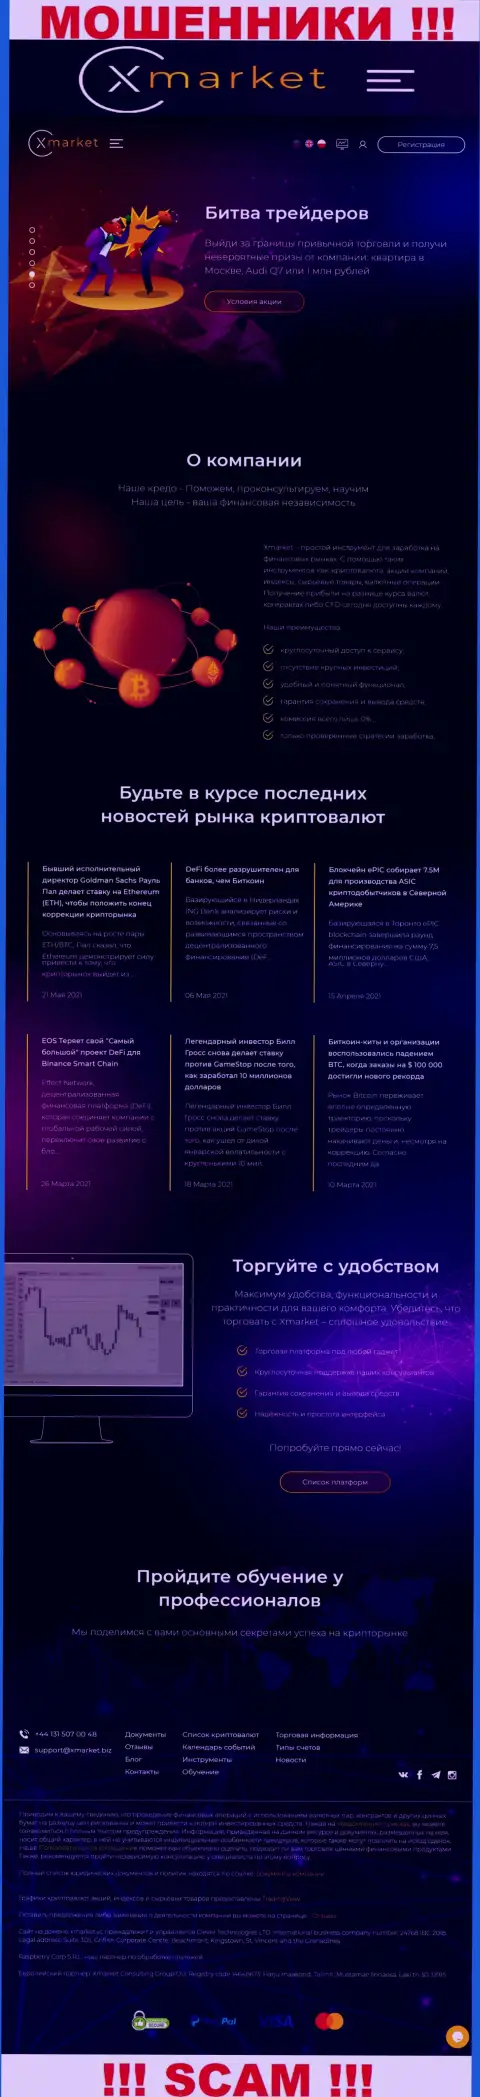 Официальный сайт интернет-жуликов и шулеров компании X Market